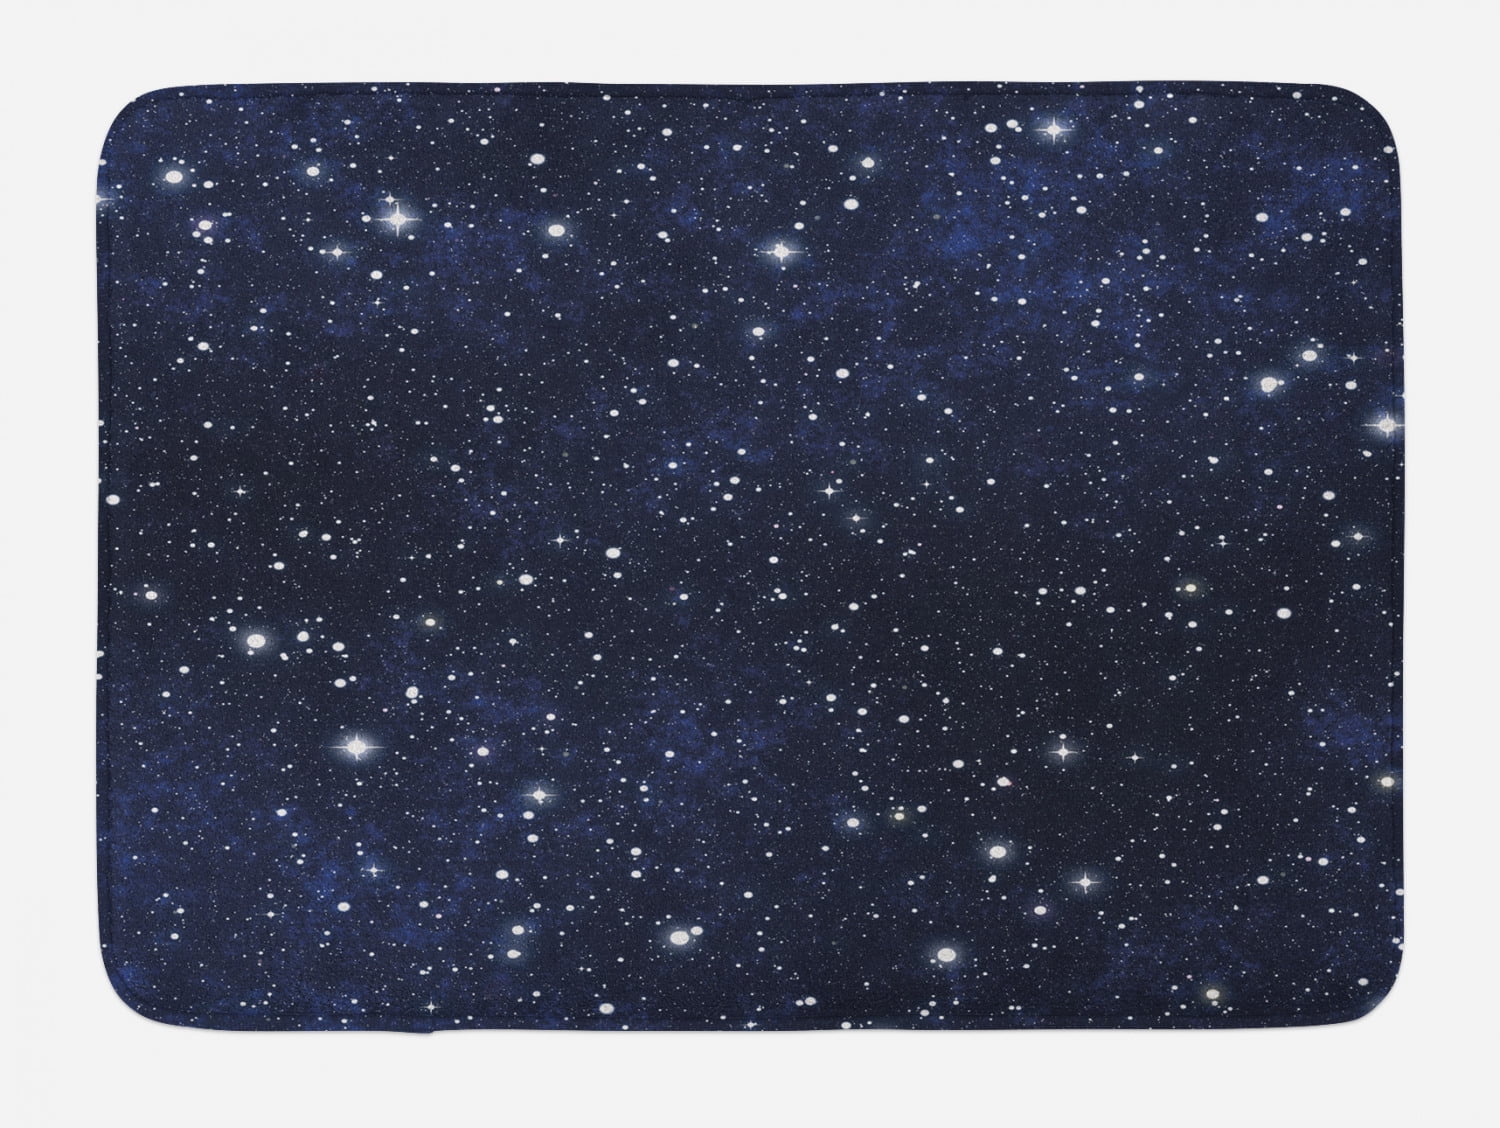 Cosmic Starry Sky Floor Memory Foam Rug Home Soft Carpet Non-slip Door Bath Mat 